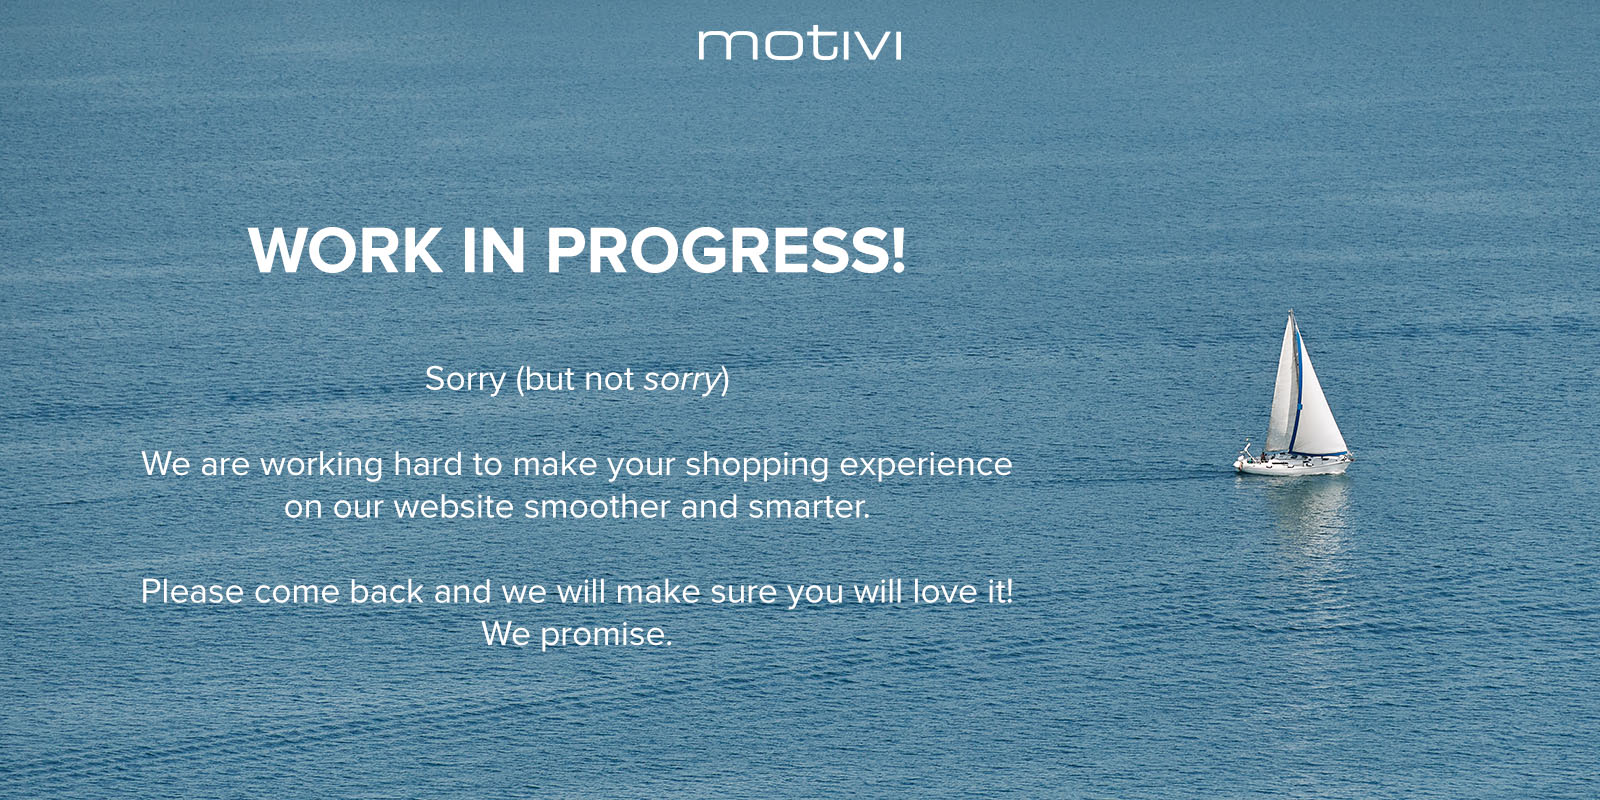 Le site de Motivi est momentanément indisponible pour cause de maintenance.